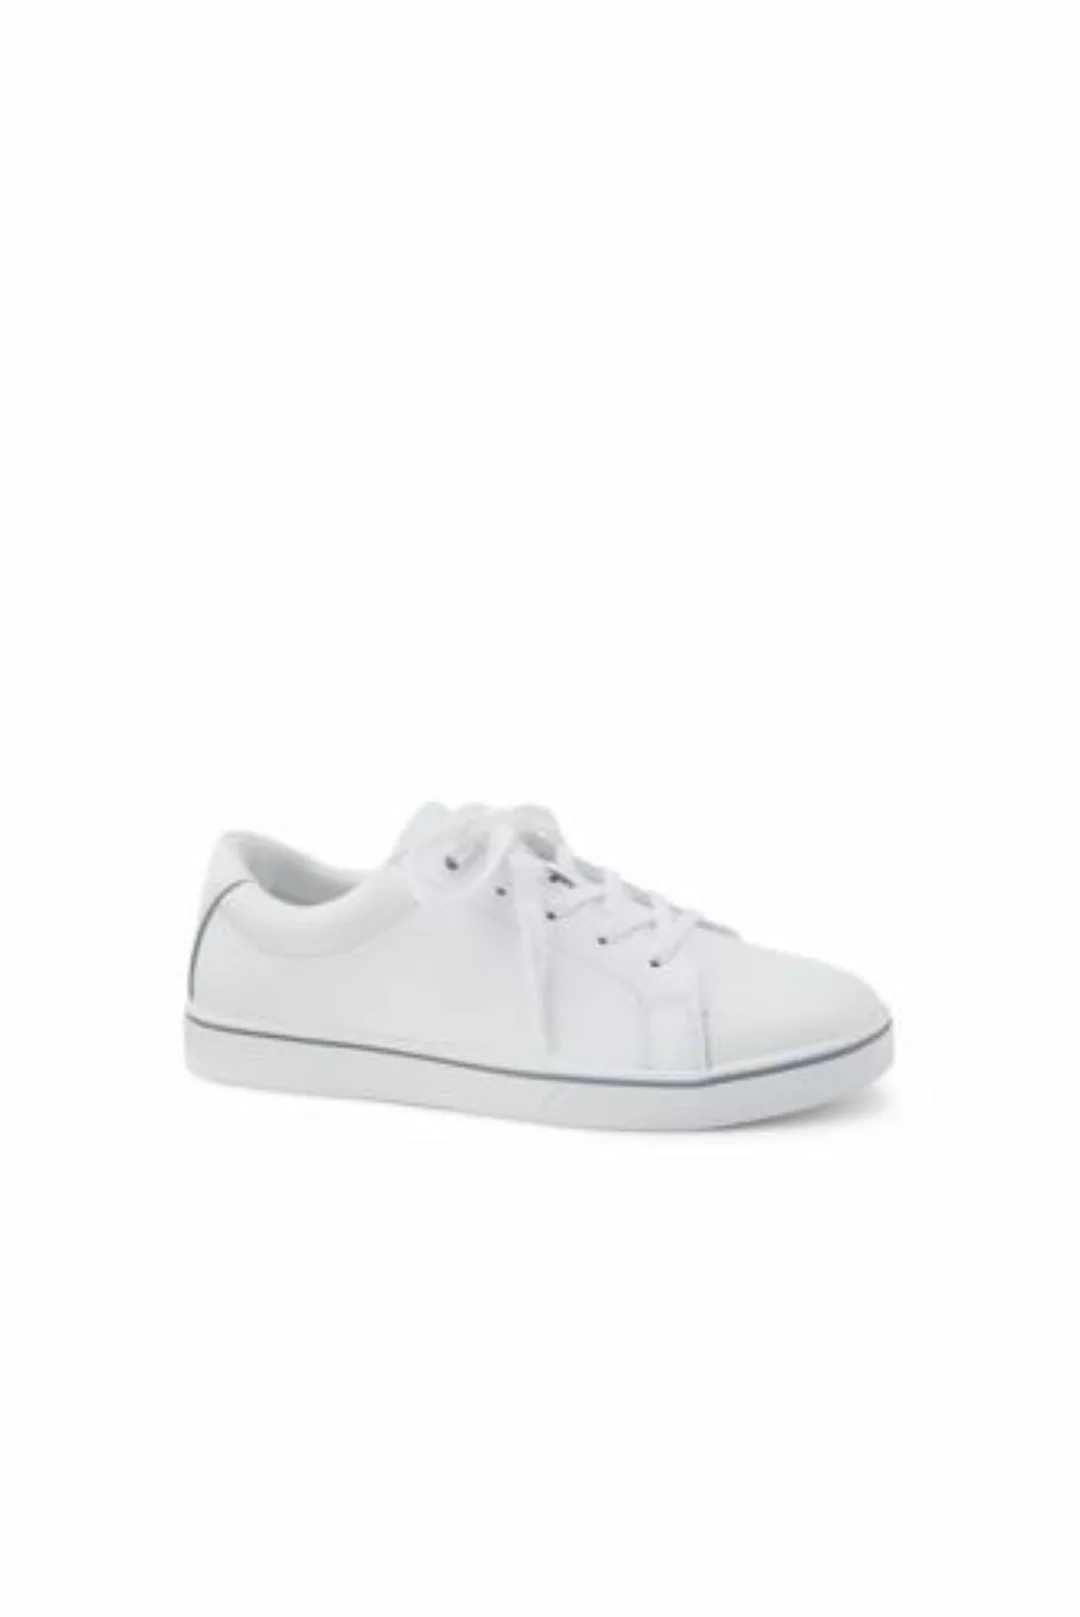 Sneaker, Damen, Größe: 42.5 Normal, Weiß, Leder, by Lands' End, Weiß Leder günstig online kaufen